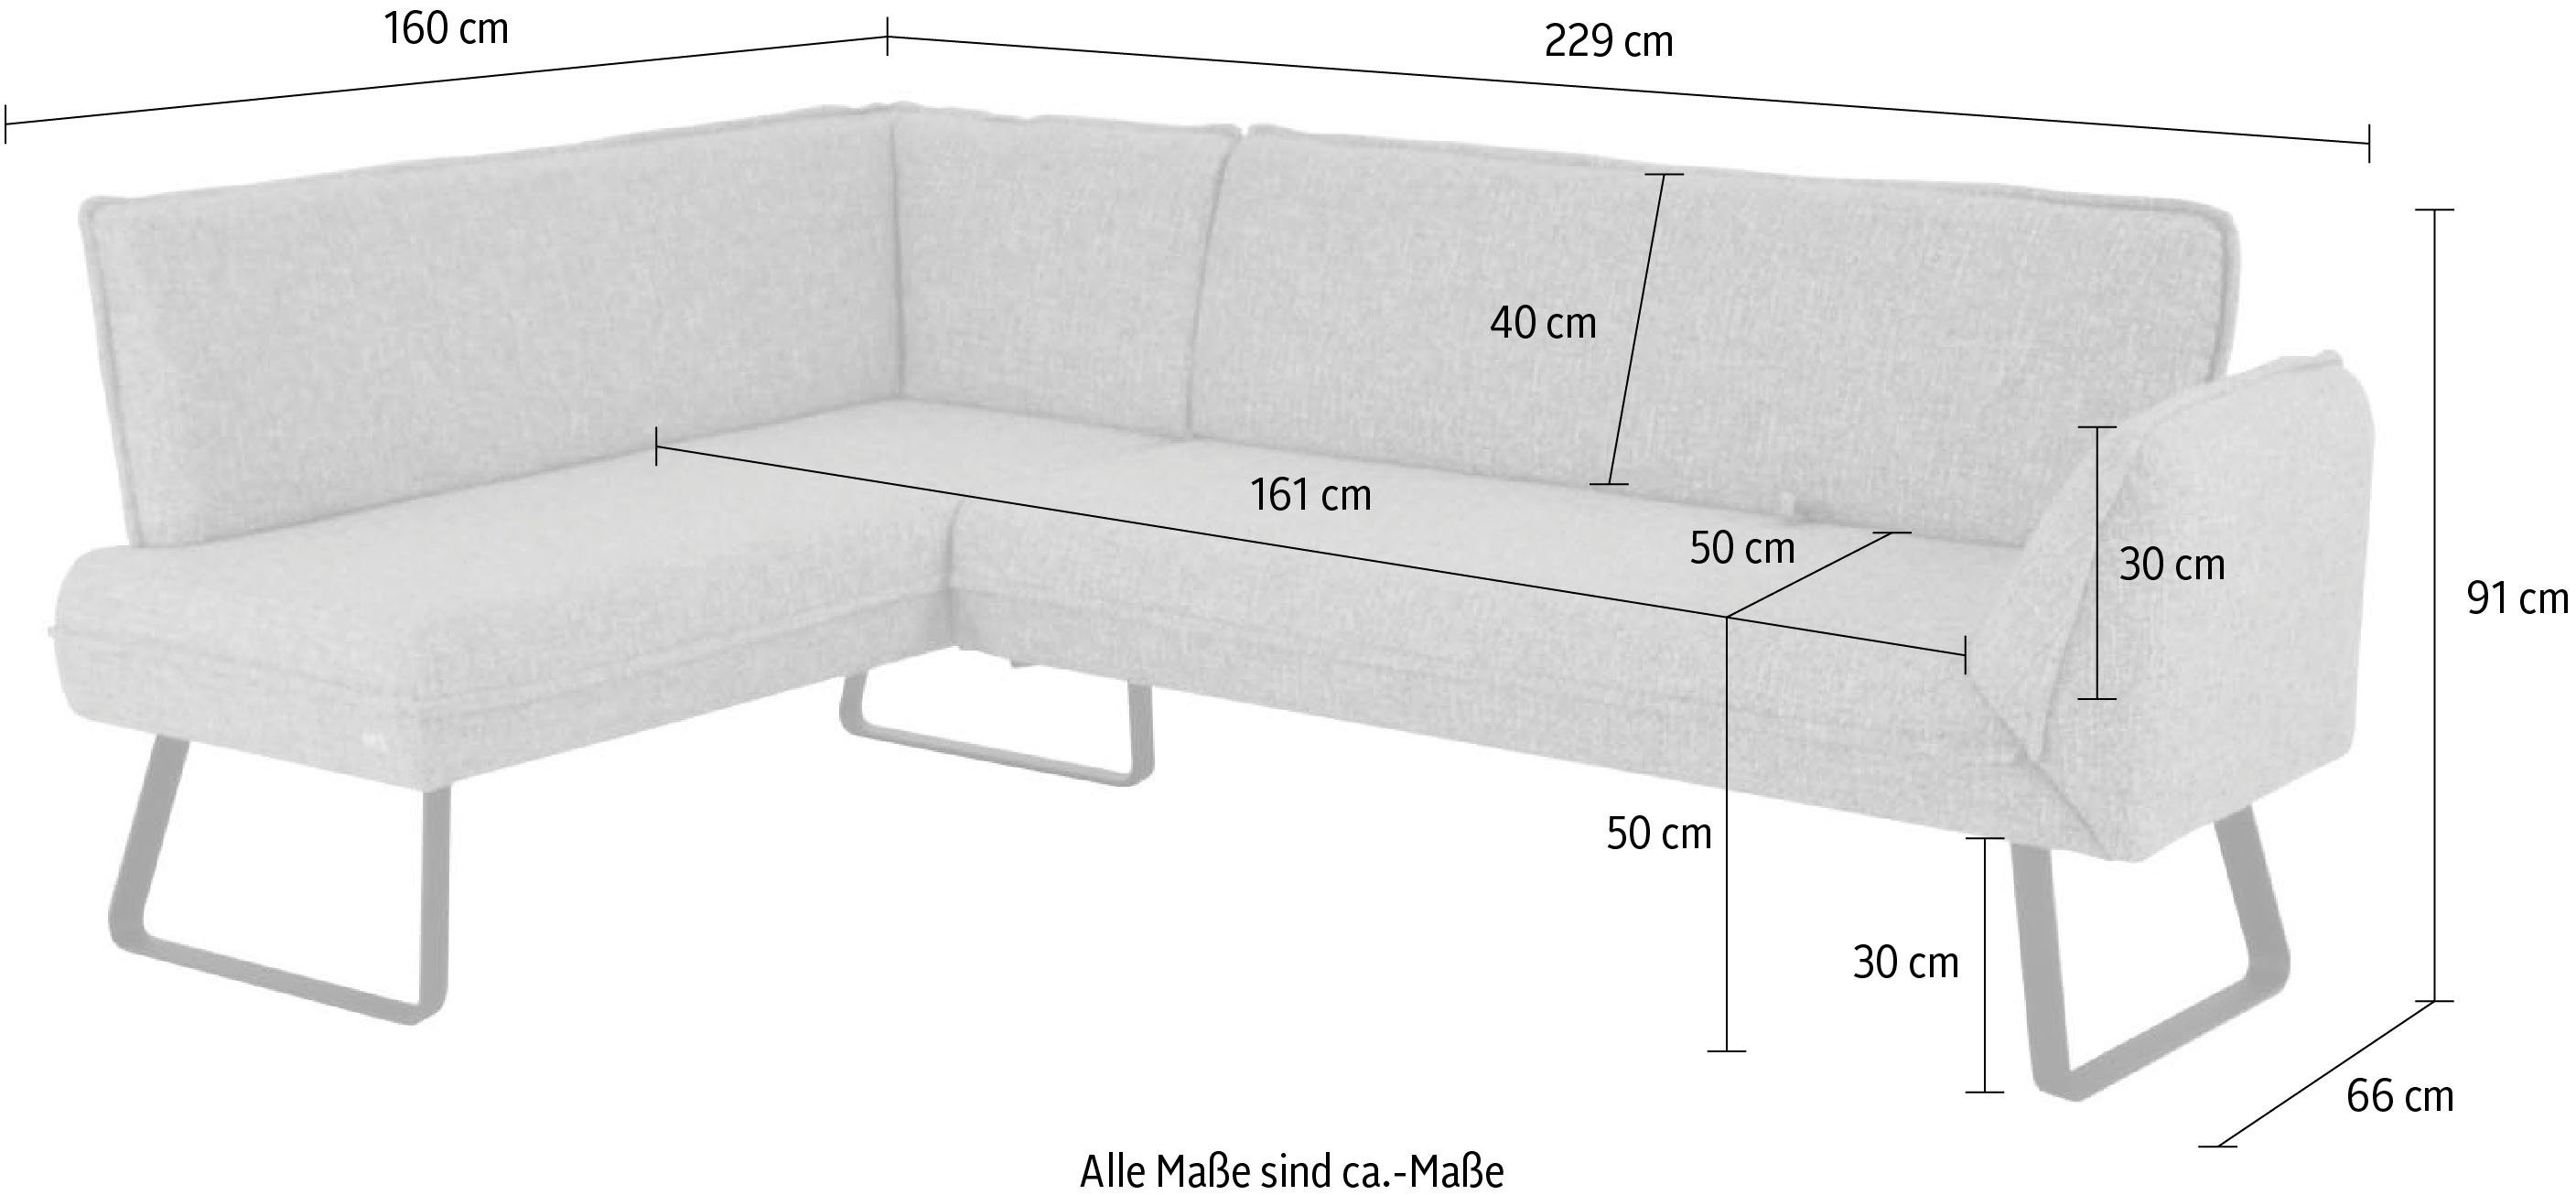 Eckbank Seitenteilverstellung K+W Schenkel Sitzplatzerweiterung mit Drive, Wohnen am zur Komfort & langem